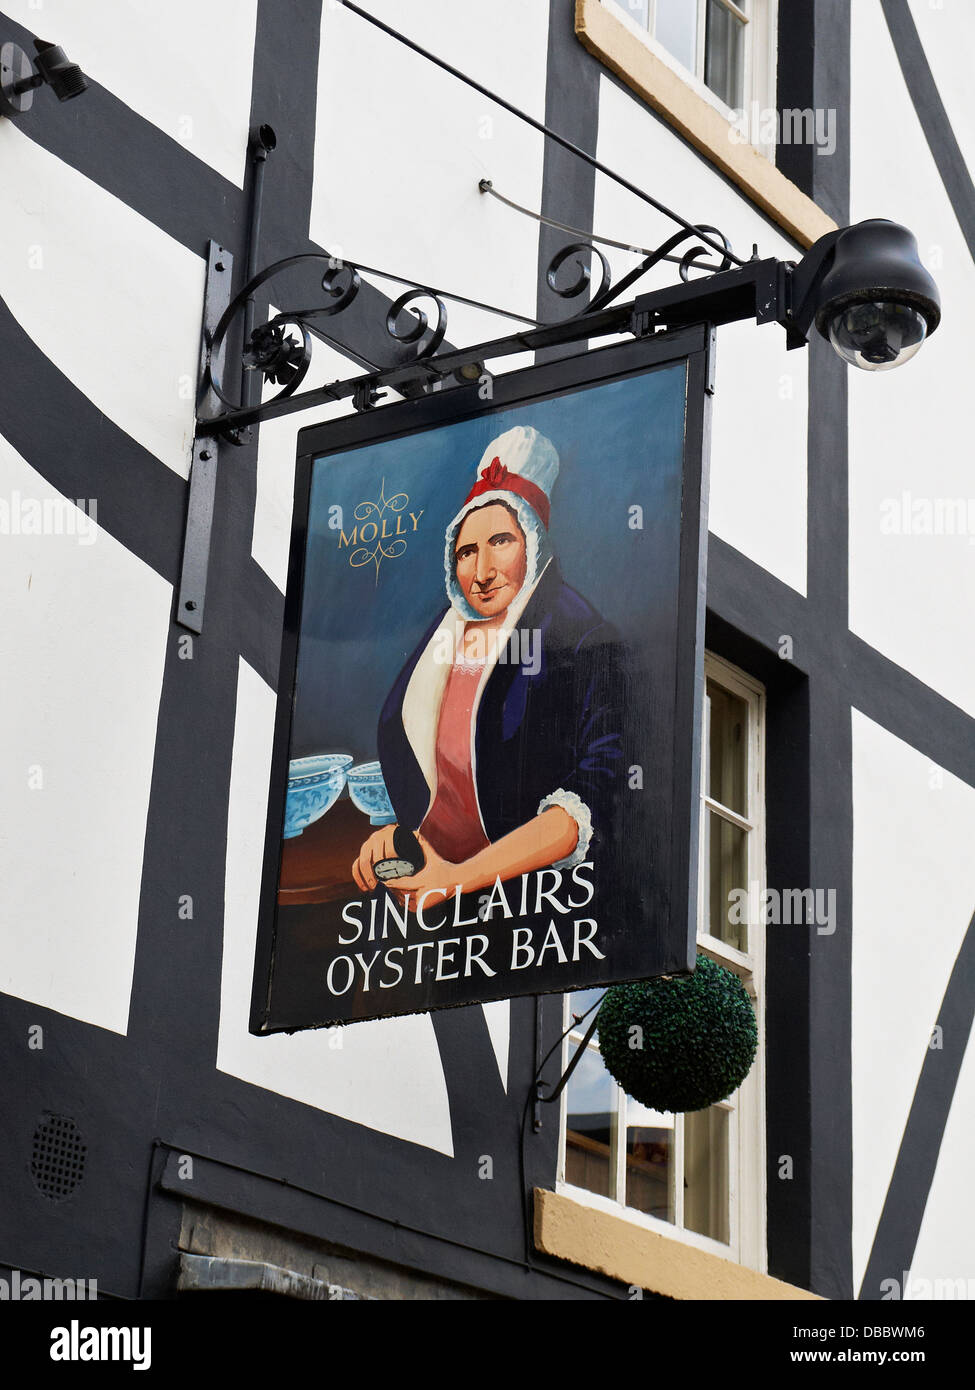 Molly, wie es bei Sinclairs Oyster Bar Pub Schild in Manchester UK verwendet wird Stockfoto